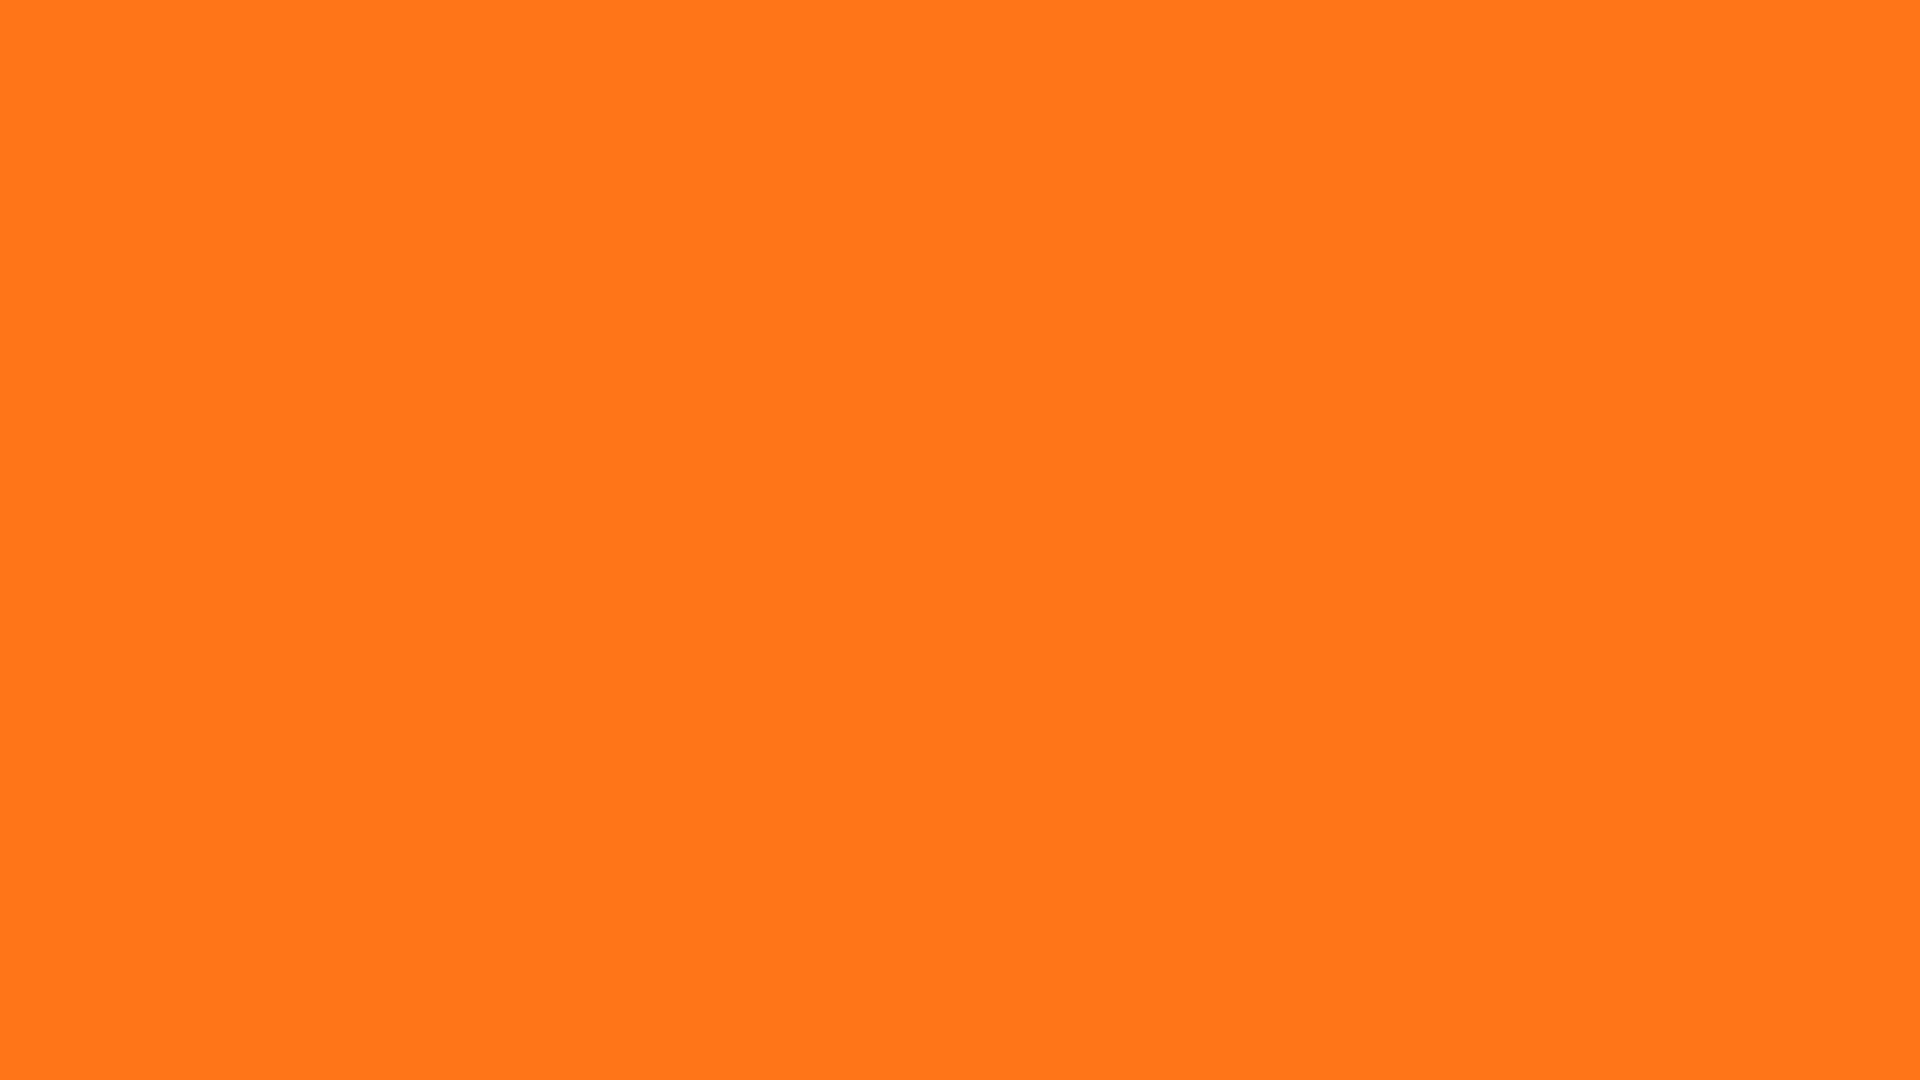 Orange Aesthetic Background, Best Background Image, HD